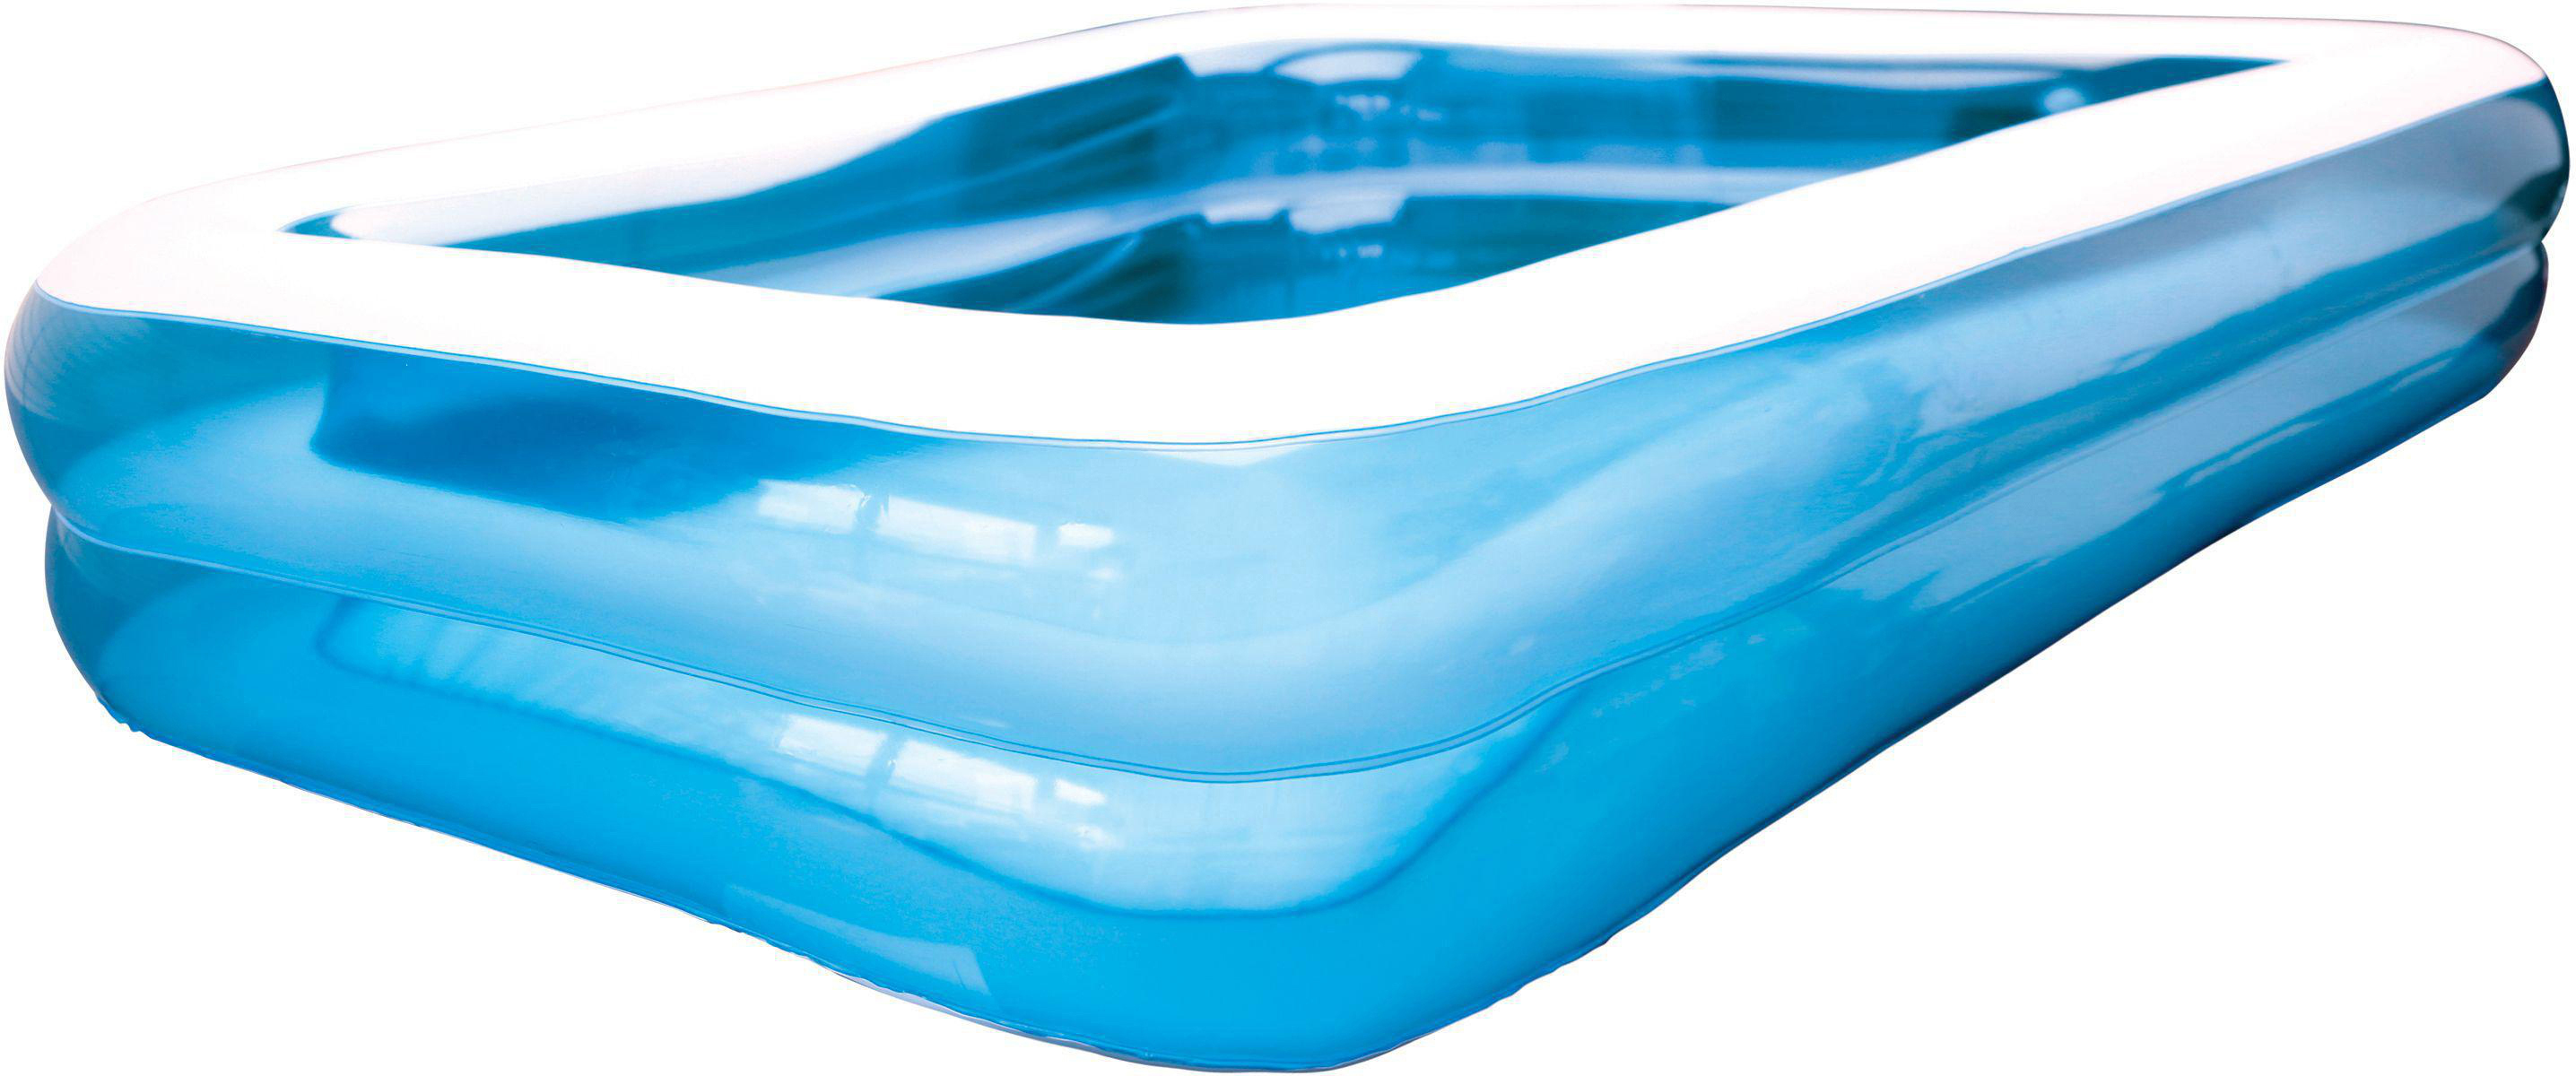 FUN SPLASH Blau Pool 110x80x30cm SF Wasserspielzeug Jumbo